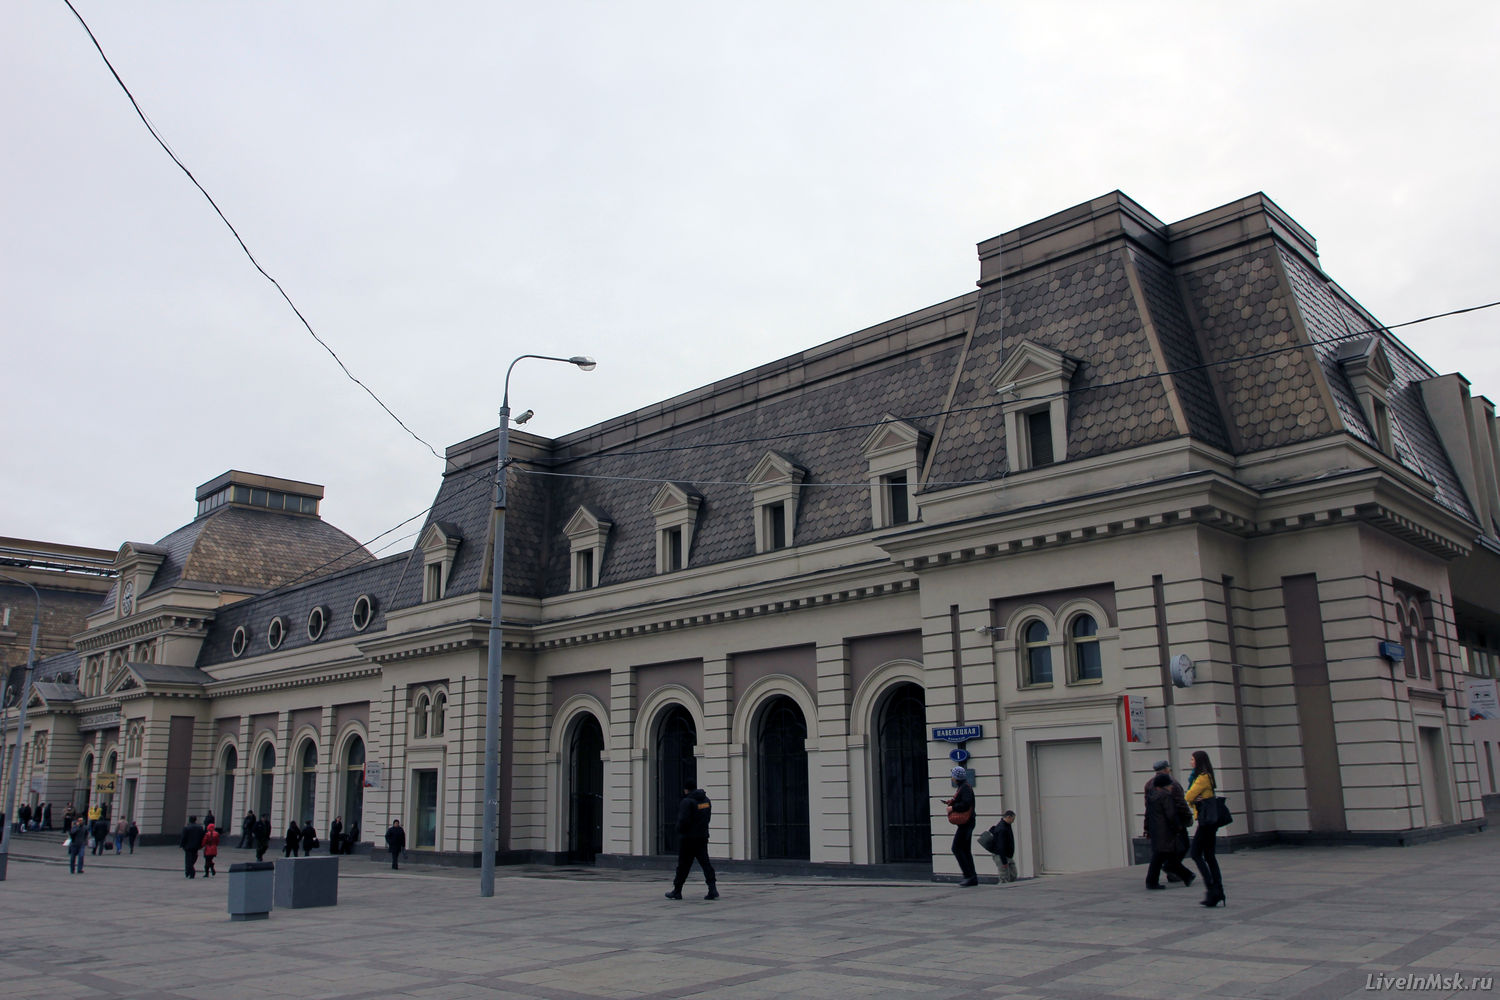 Павелецкий вокзал, фото 2014 года